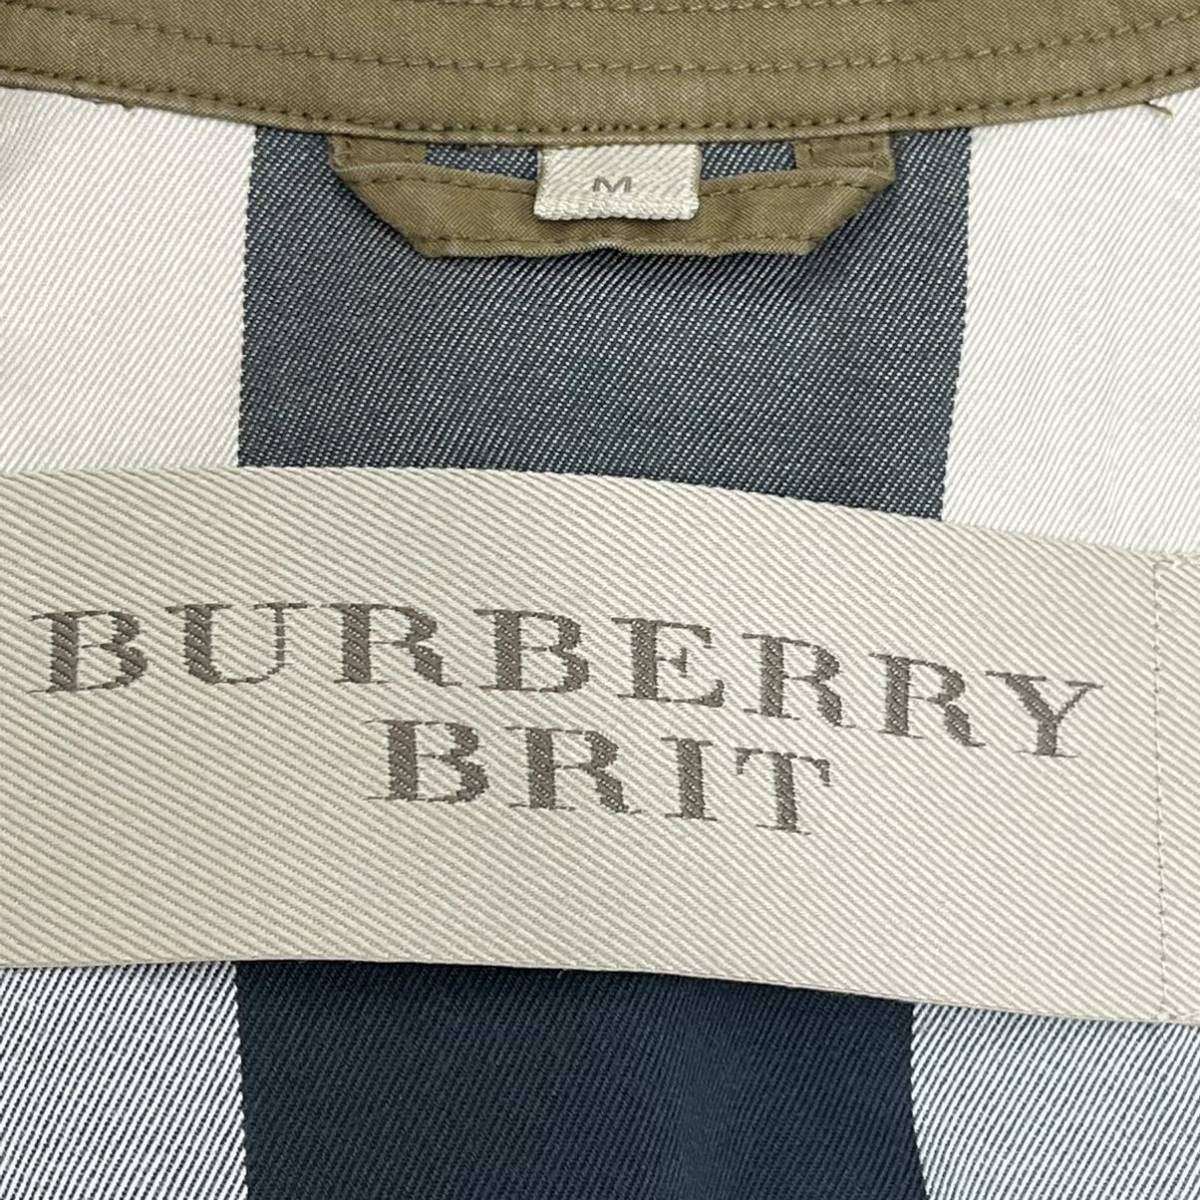 BURBERRY BRIT バーバリー ブリット コットン混 裏地ノバチェック柄 トレンチコート メンズ